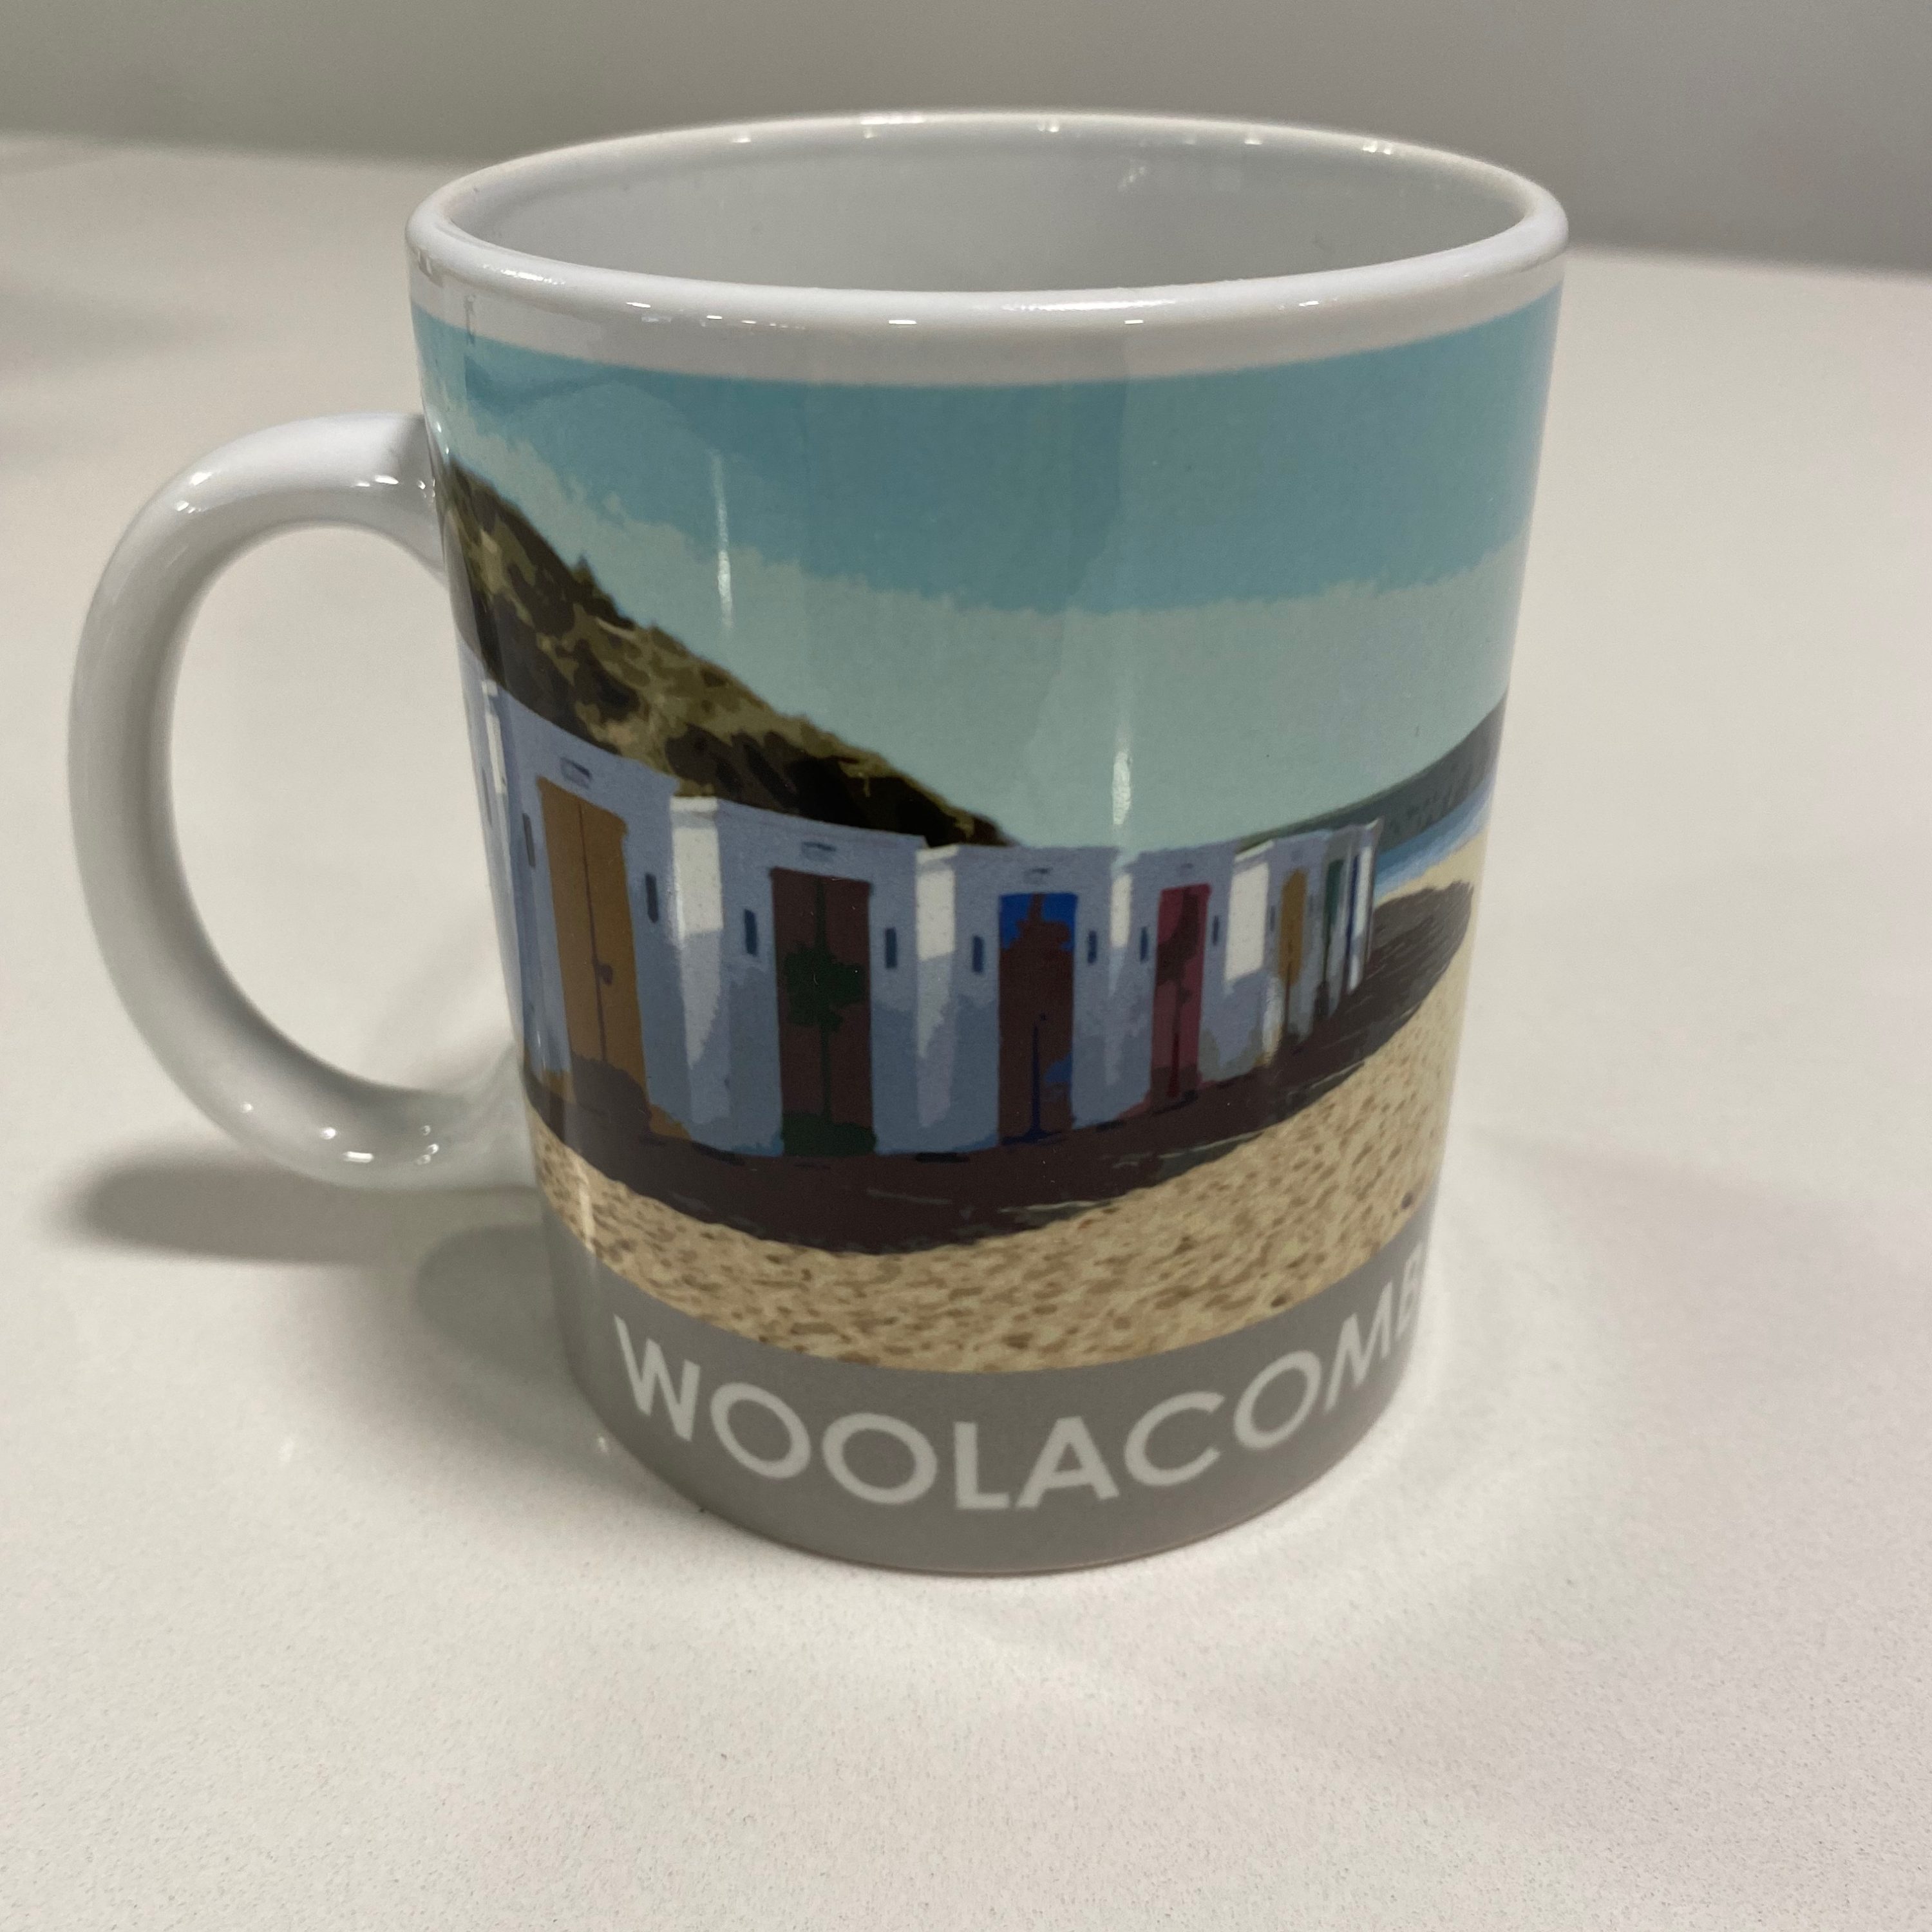 Woolacombe Mug